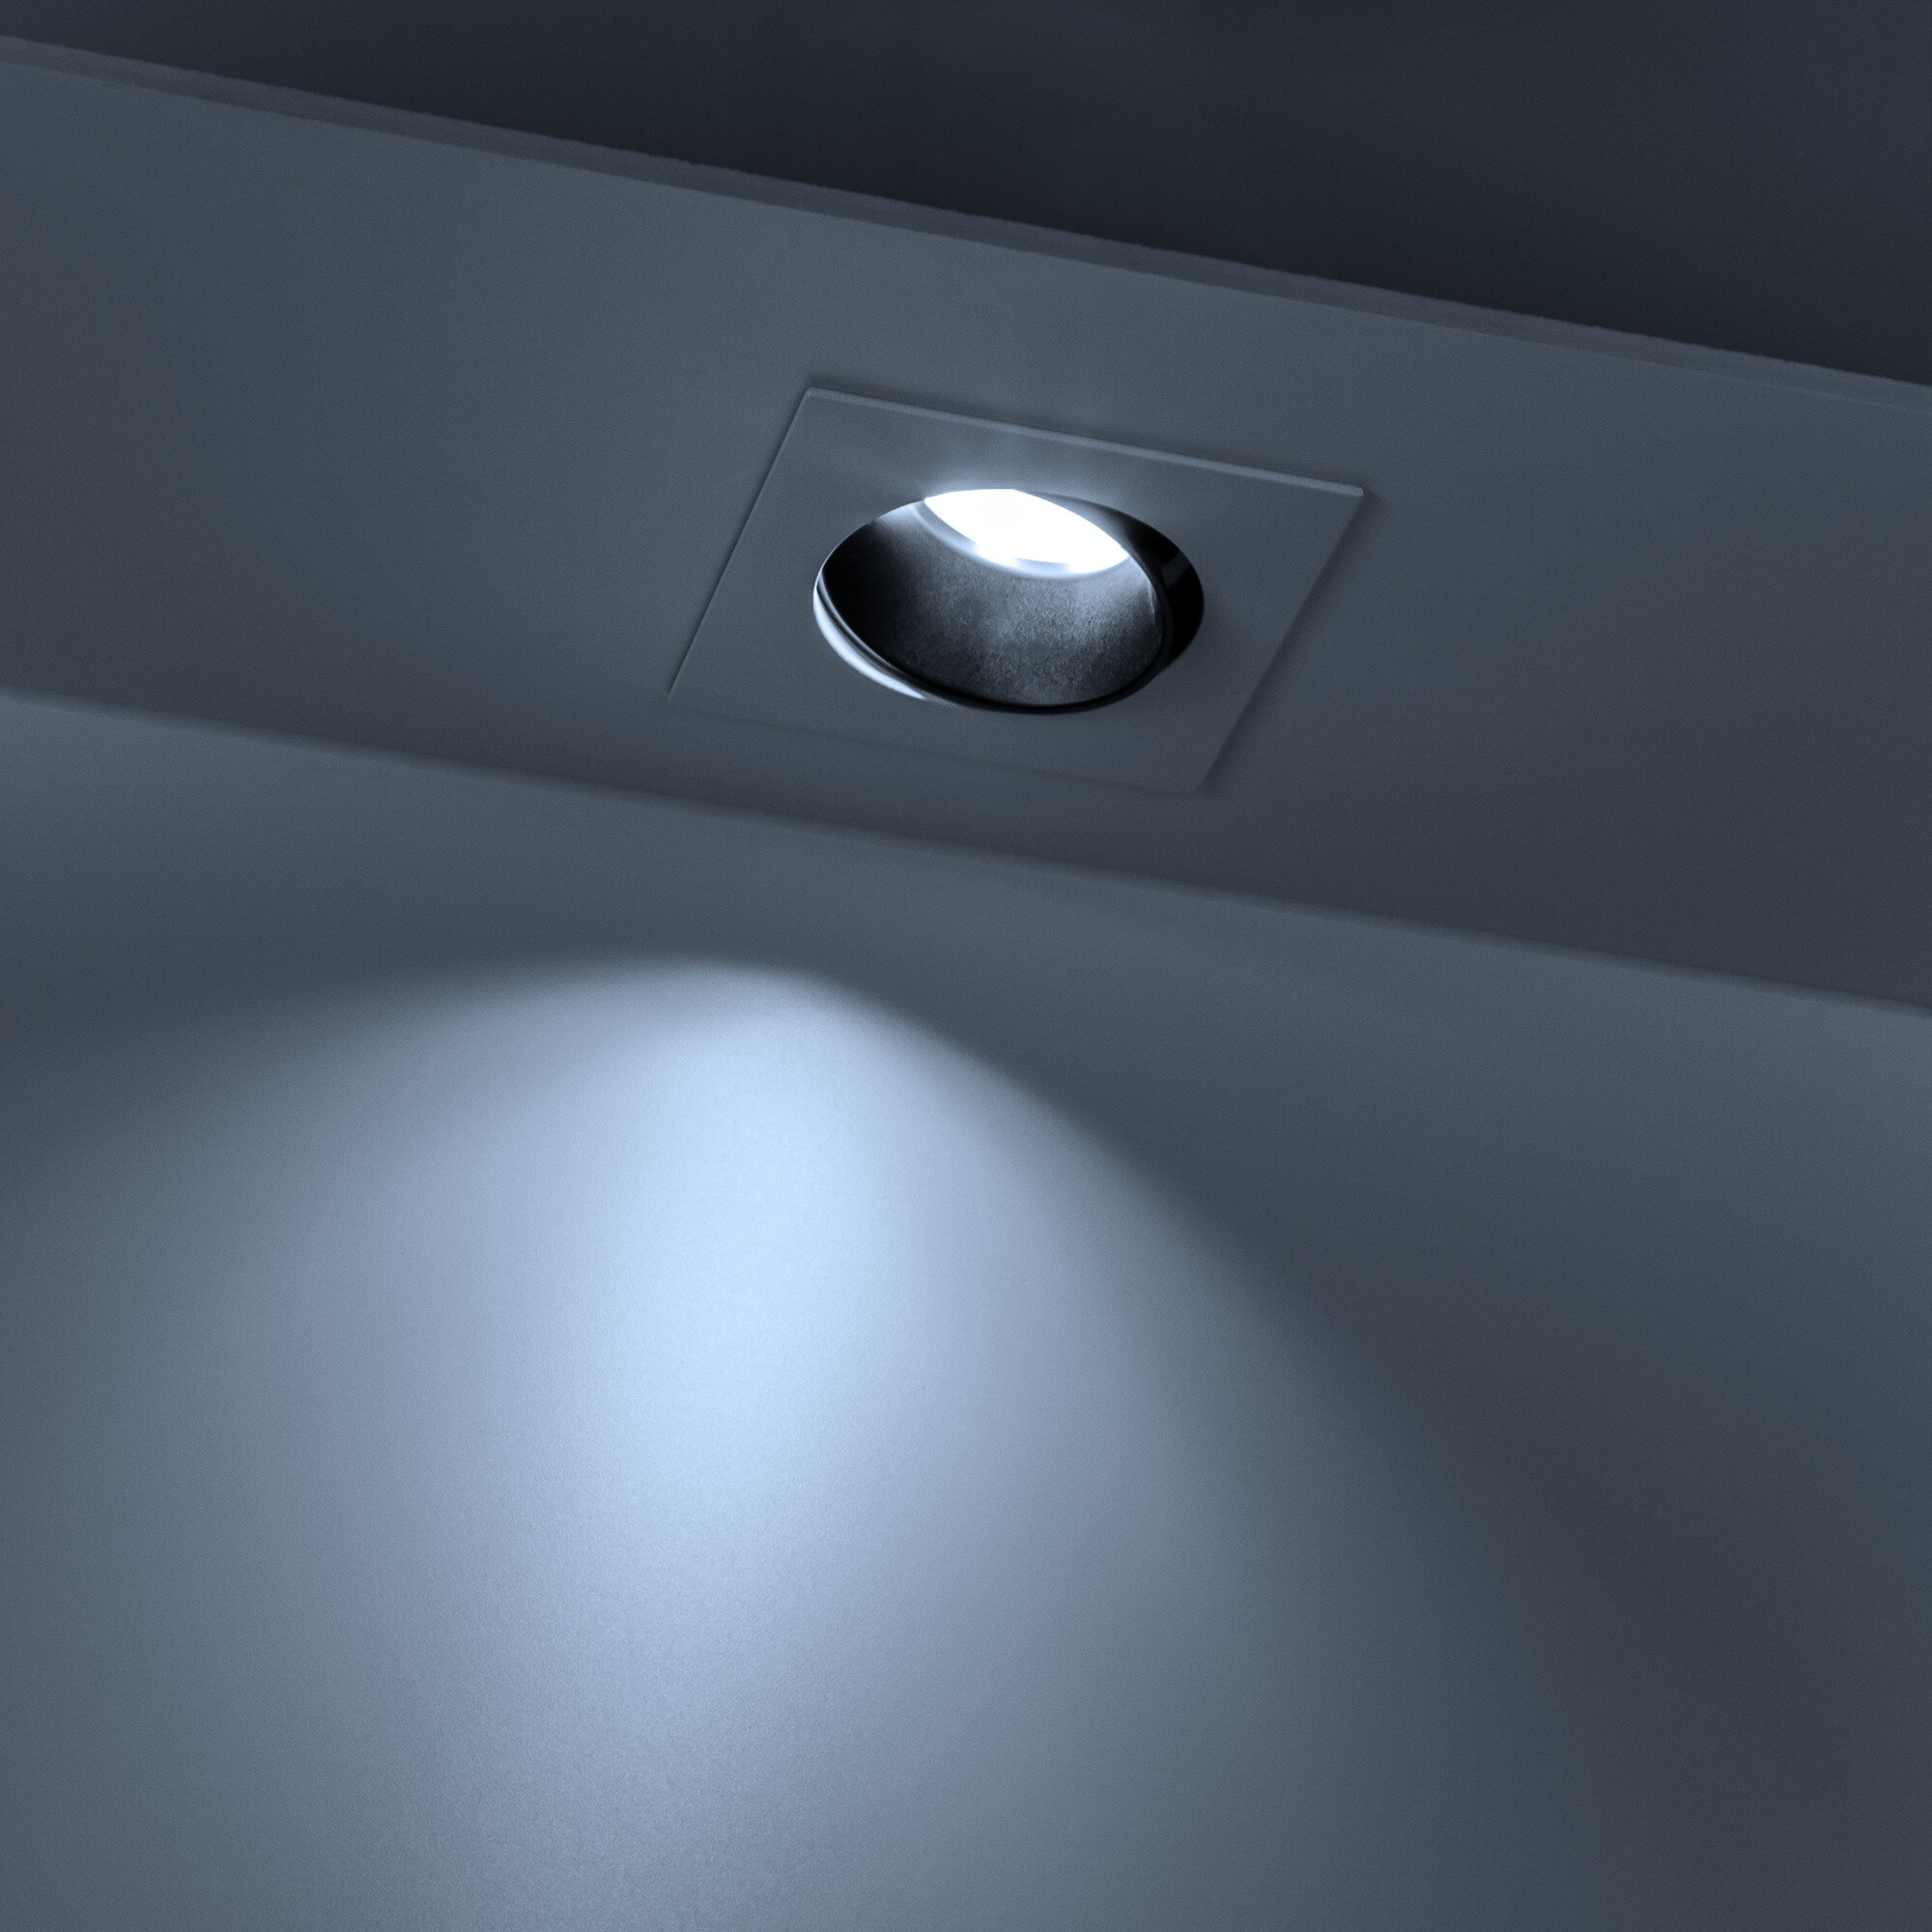 Светильник встраиваемый потолочный Artin, скрытая лампа, 90х90х30мм, монтажное отверстие 75х75мм, GU5.3, алюминий, белый/черный, Ritter, 51430 5